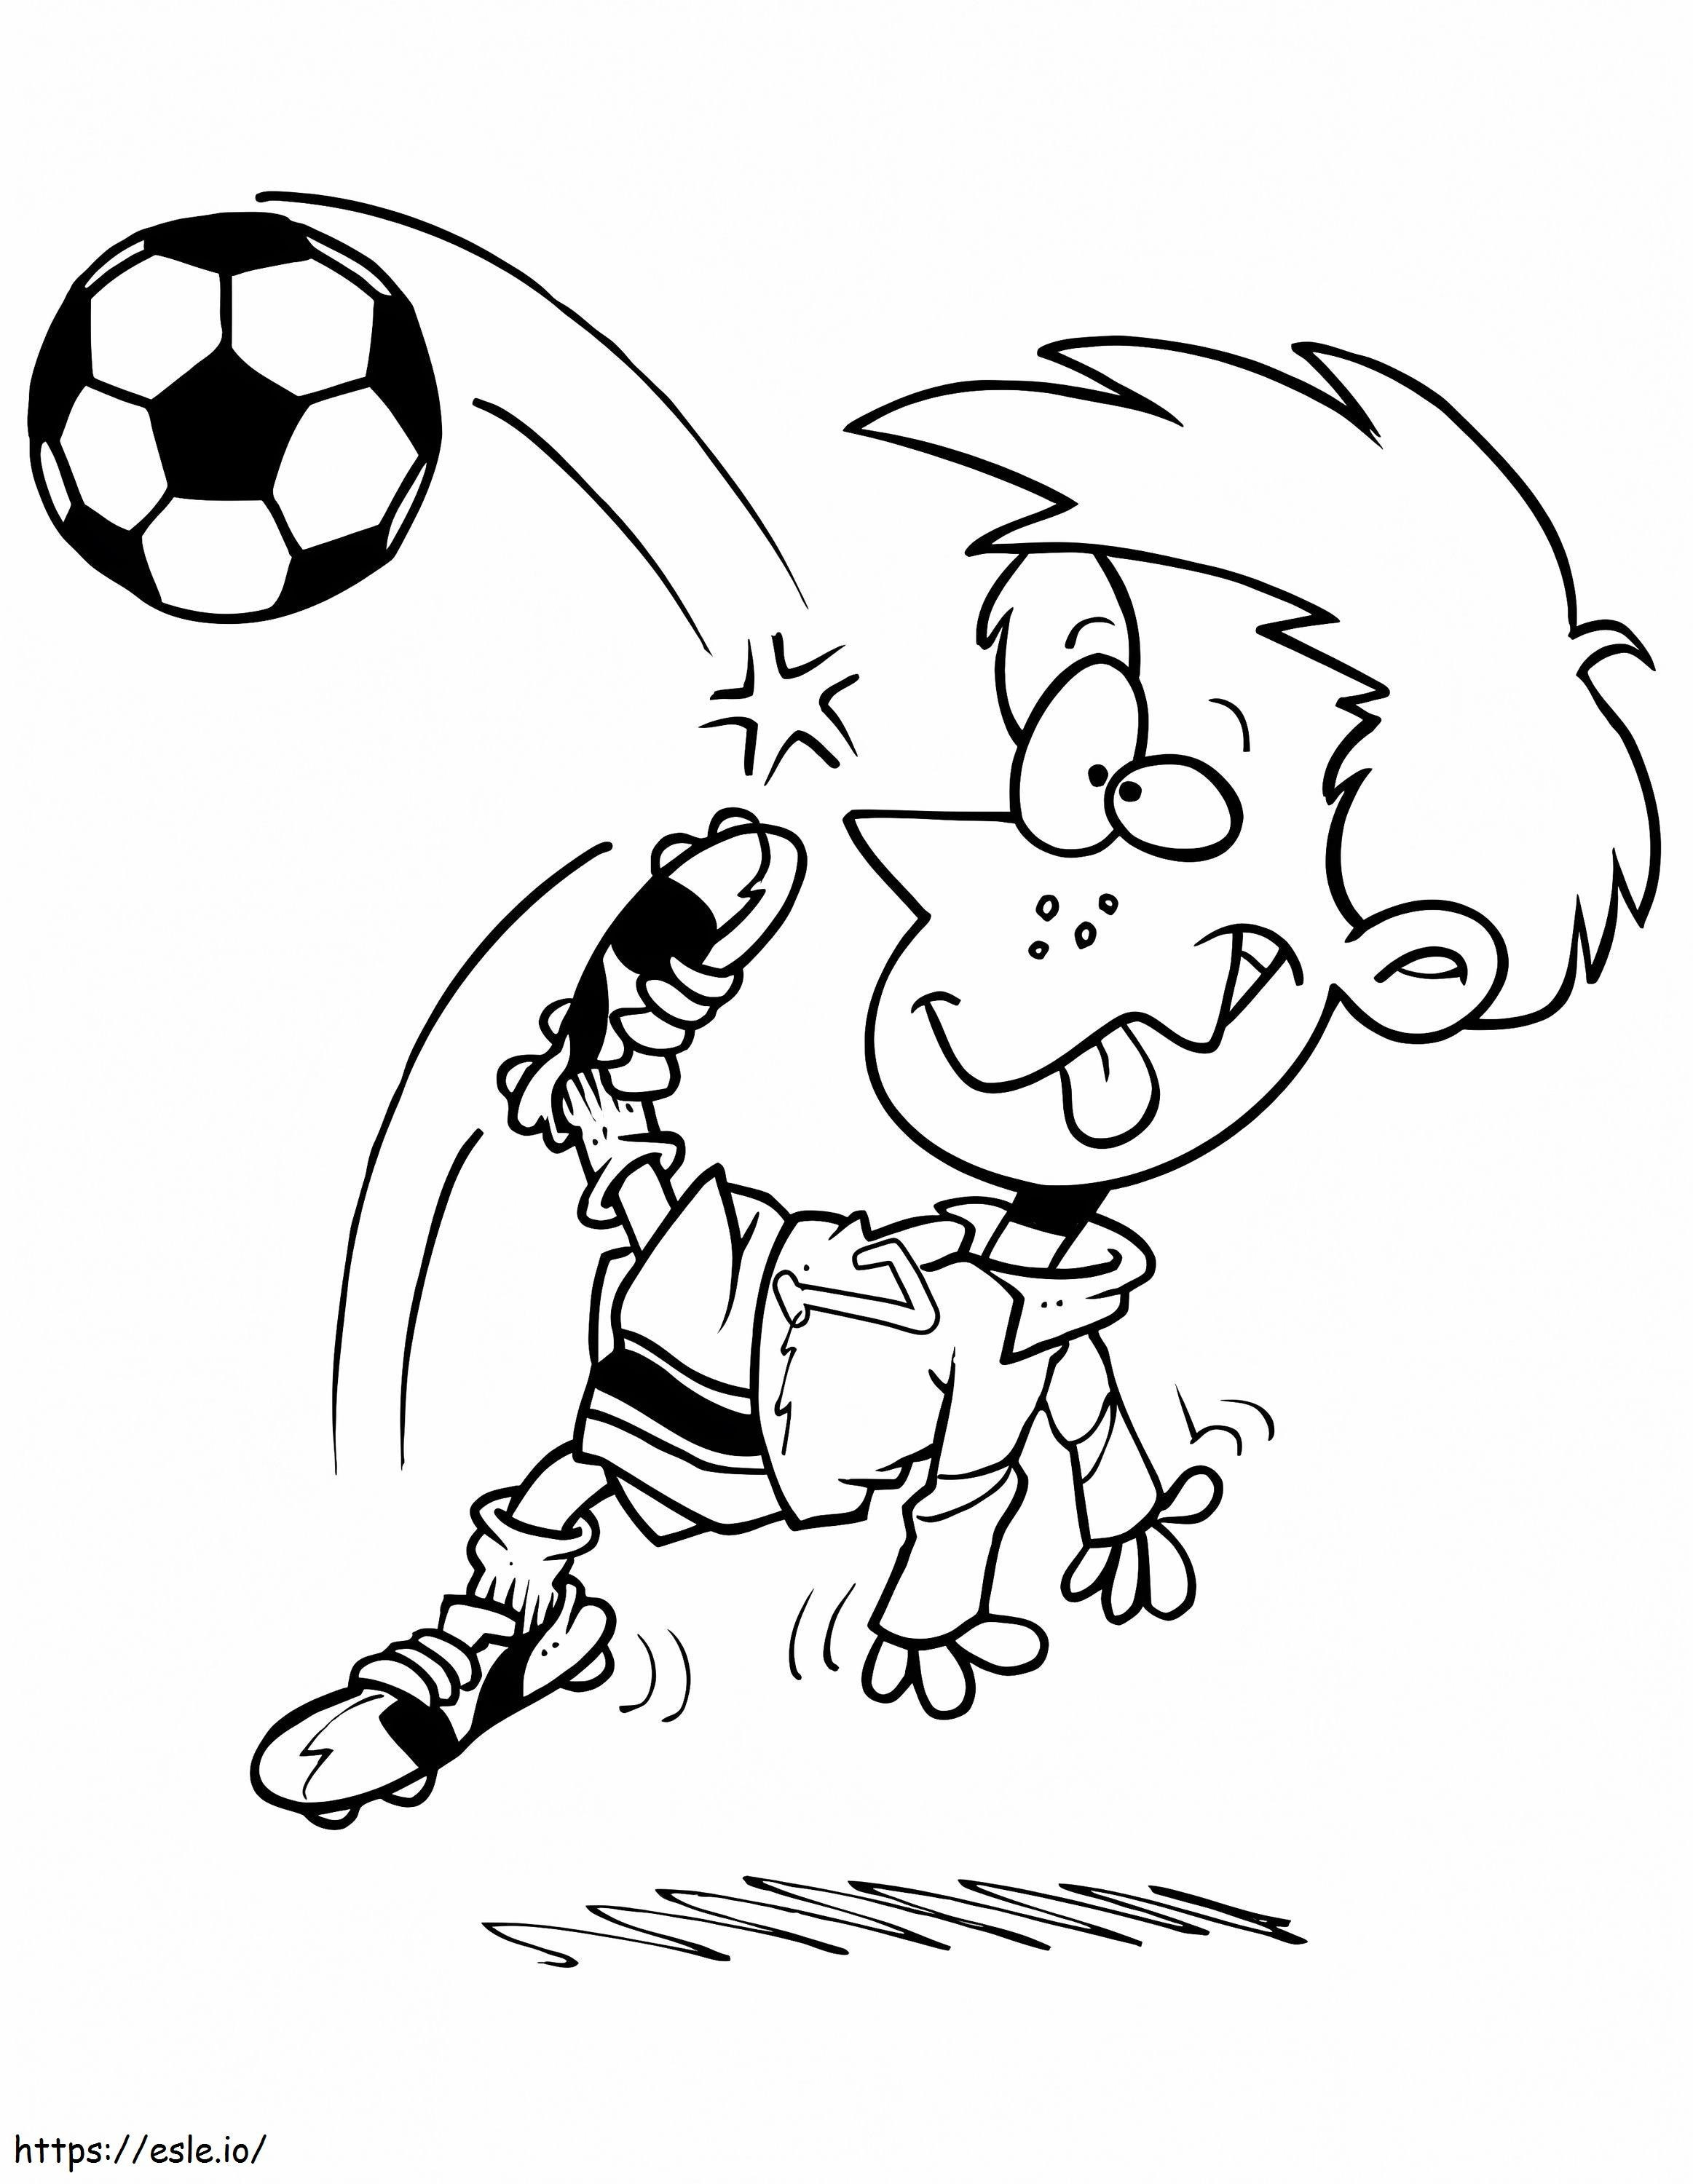 Um menino engraçado jogando futebol para colorir